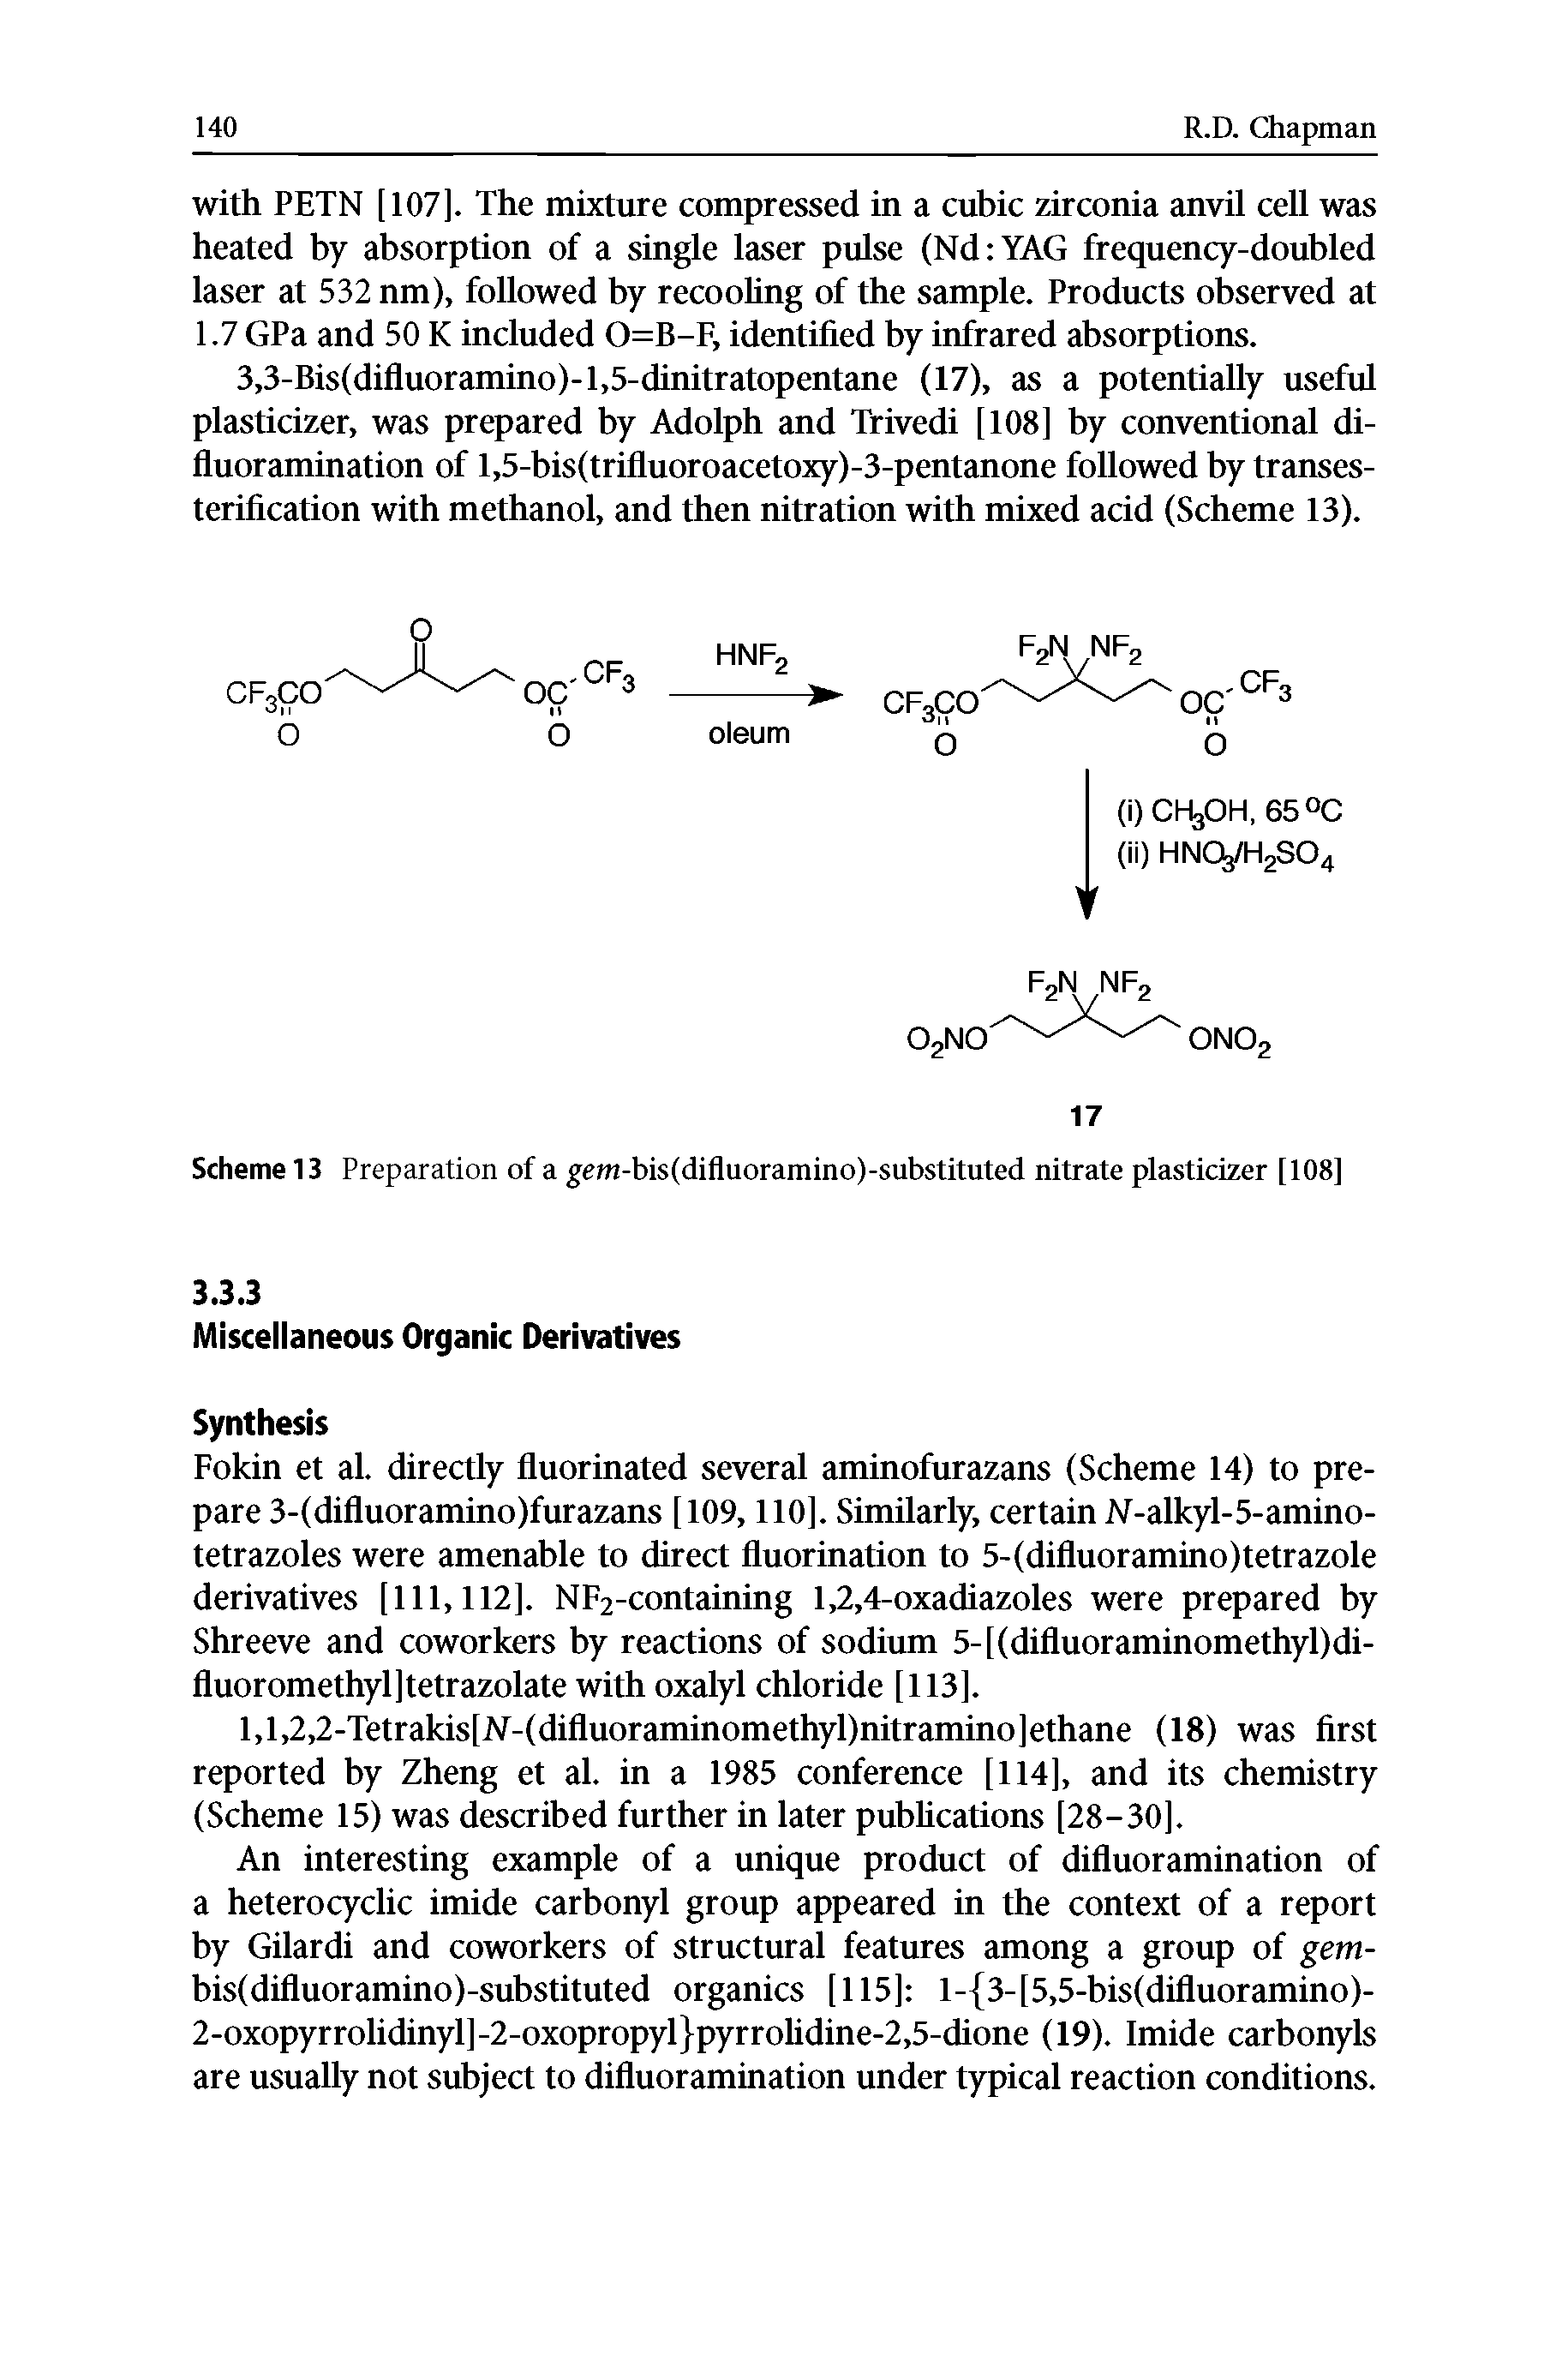 Scheme 13 Preparation of a gefn-bis(difluoramino)-substituted nitrate plasticizer [108]...